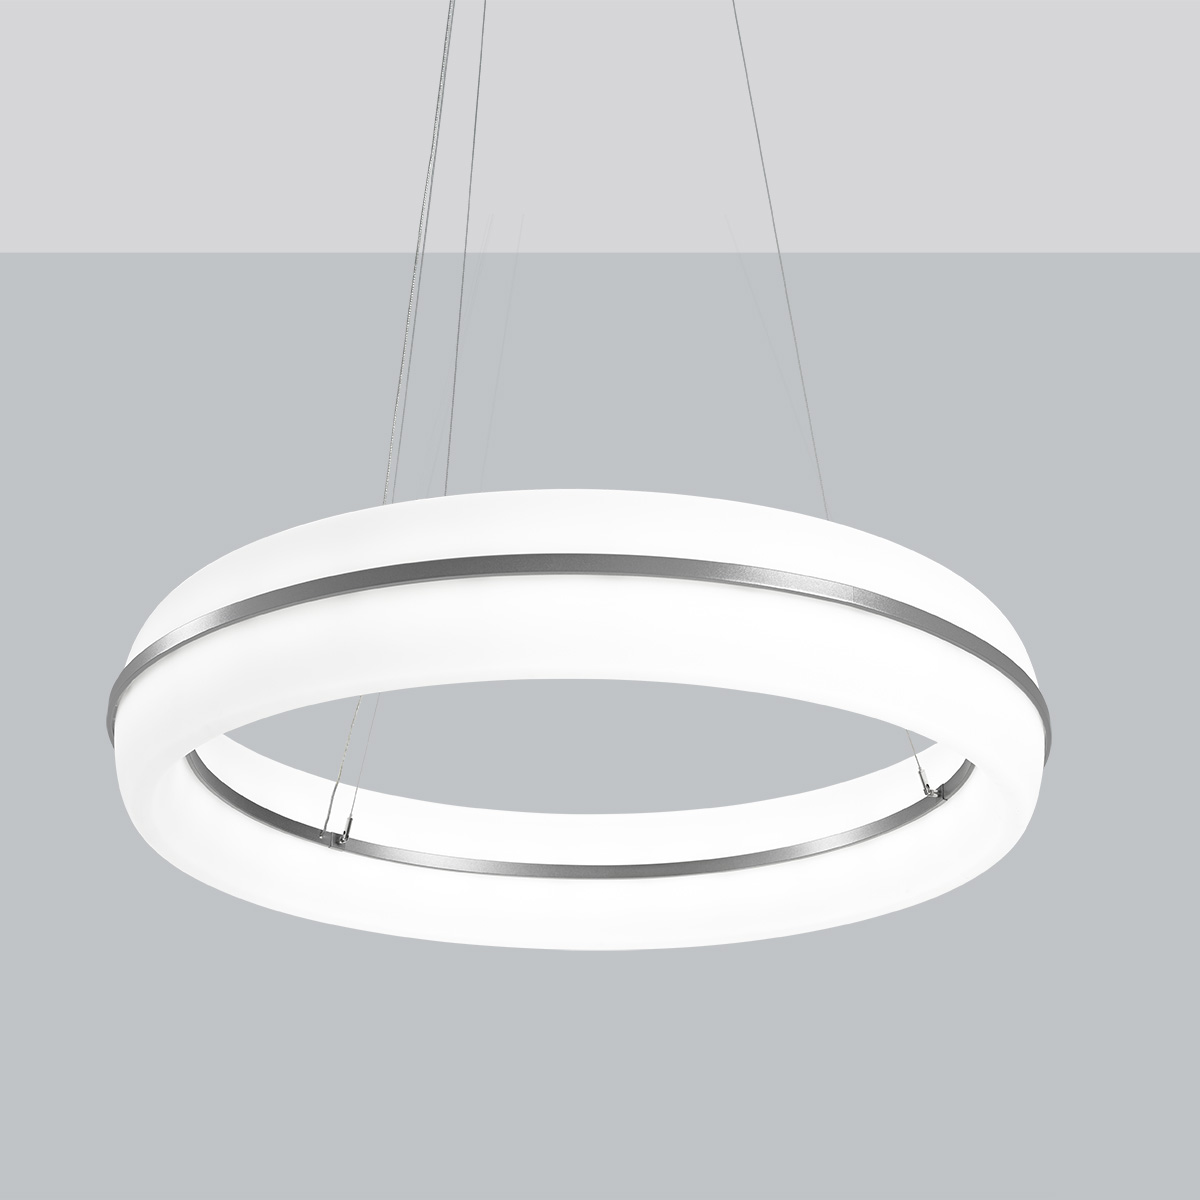 A fully luminous ring pendant